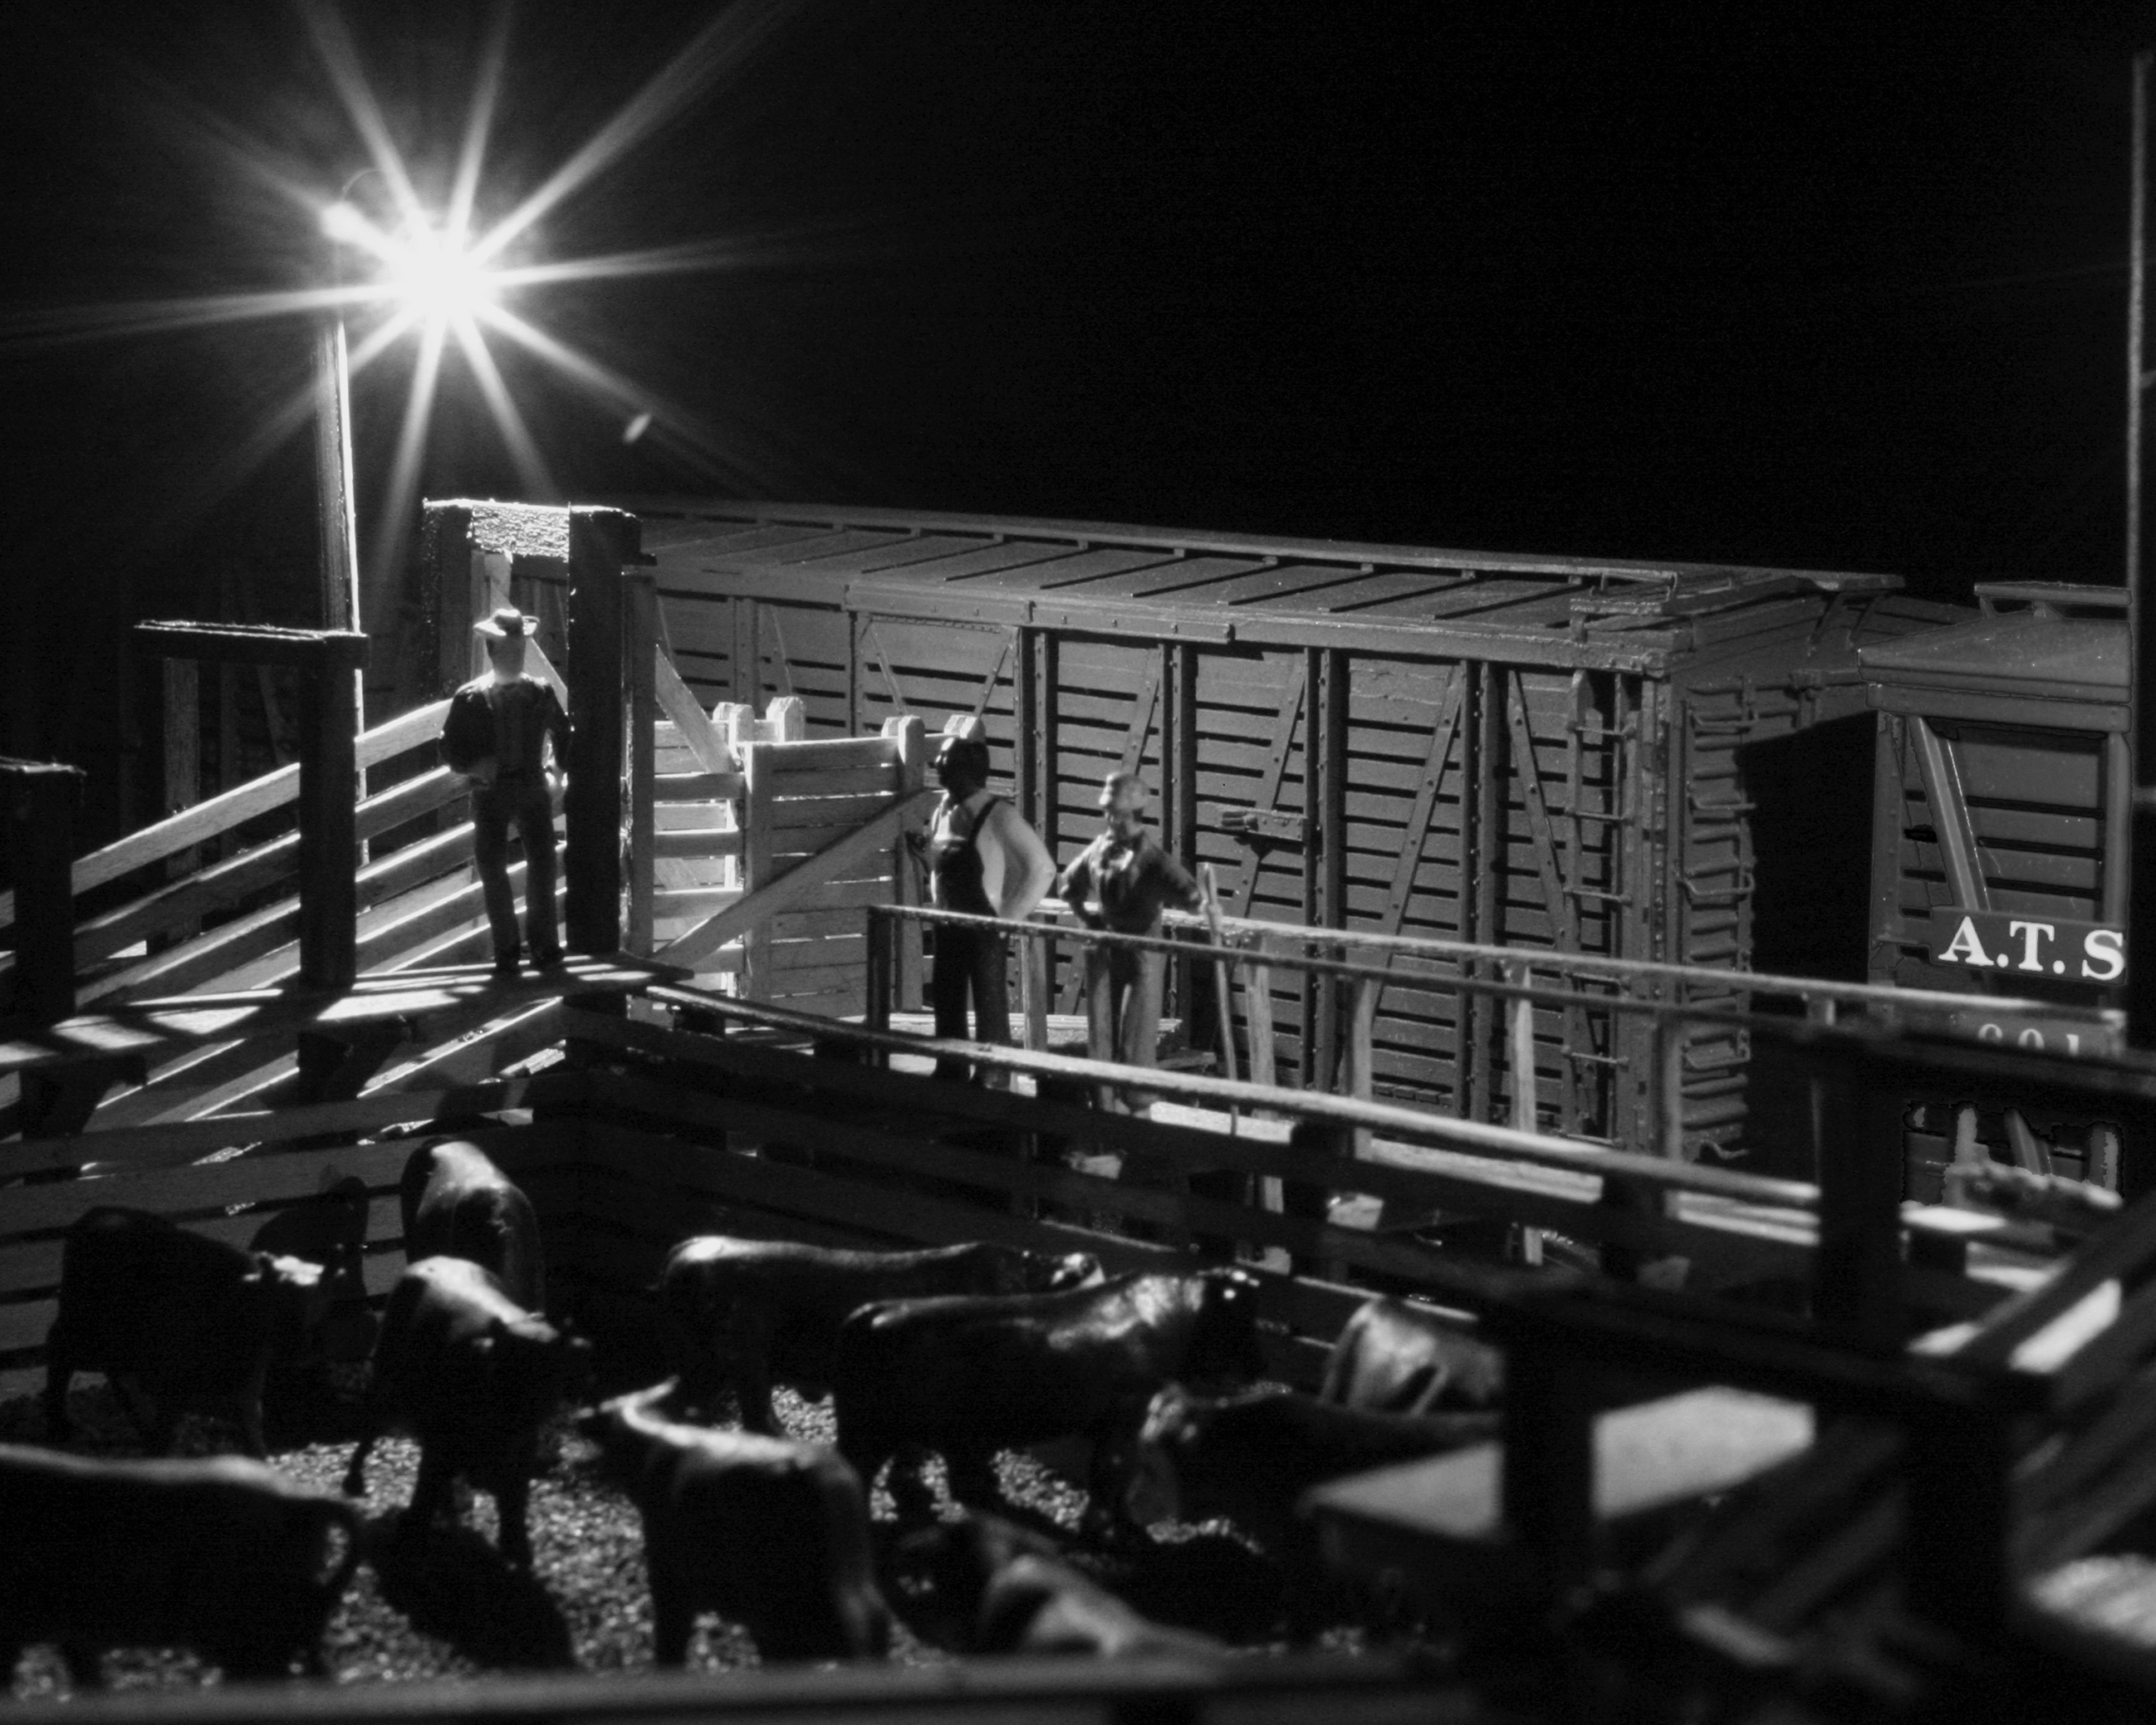 Modeled night scene in stockyard